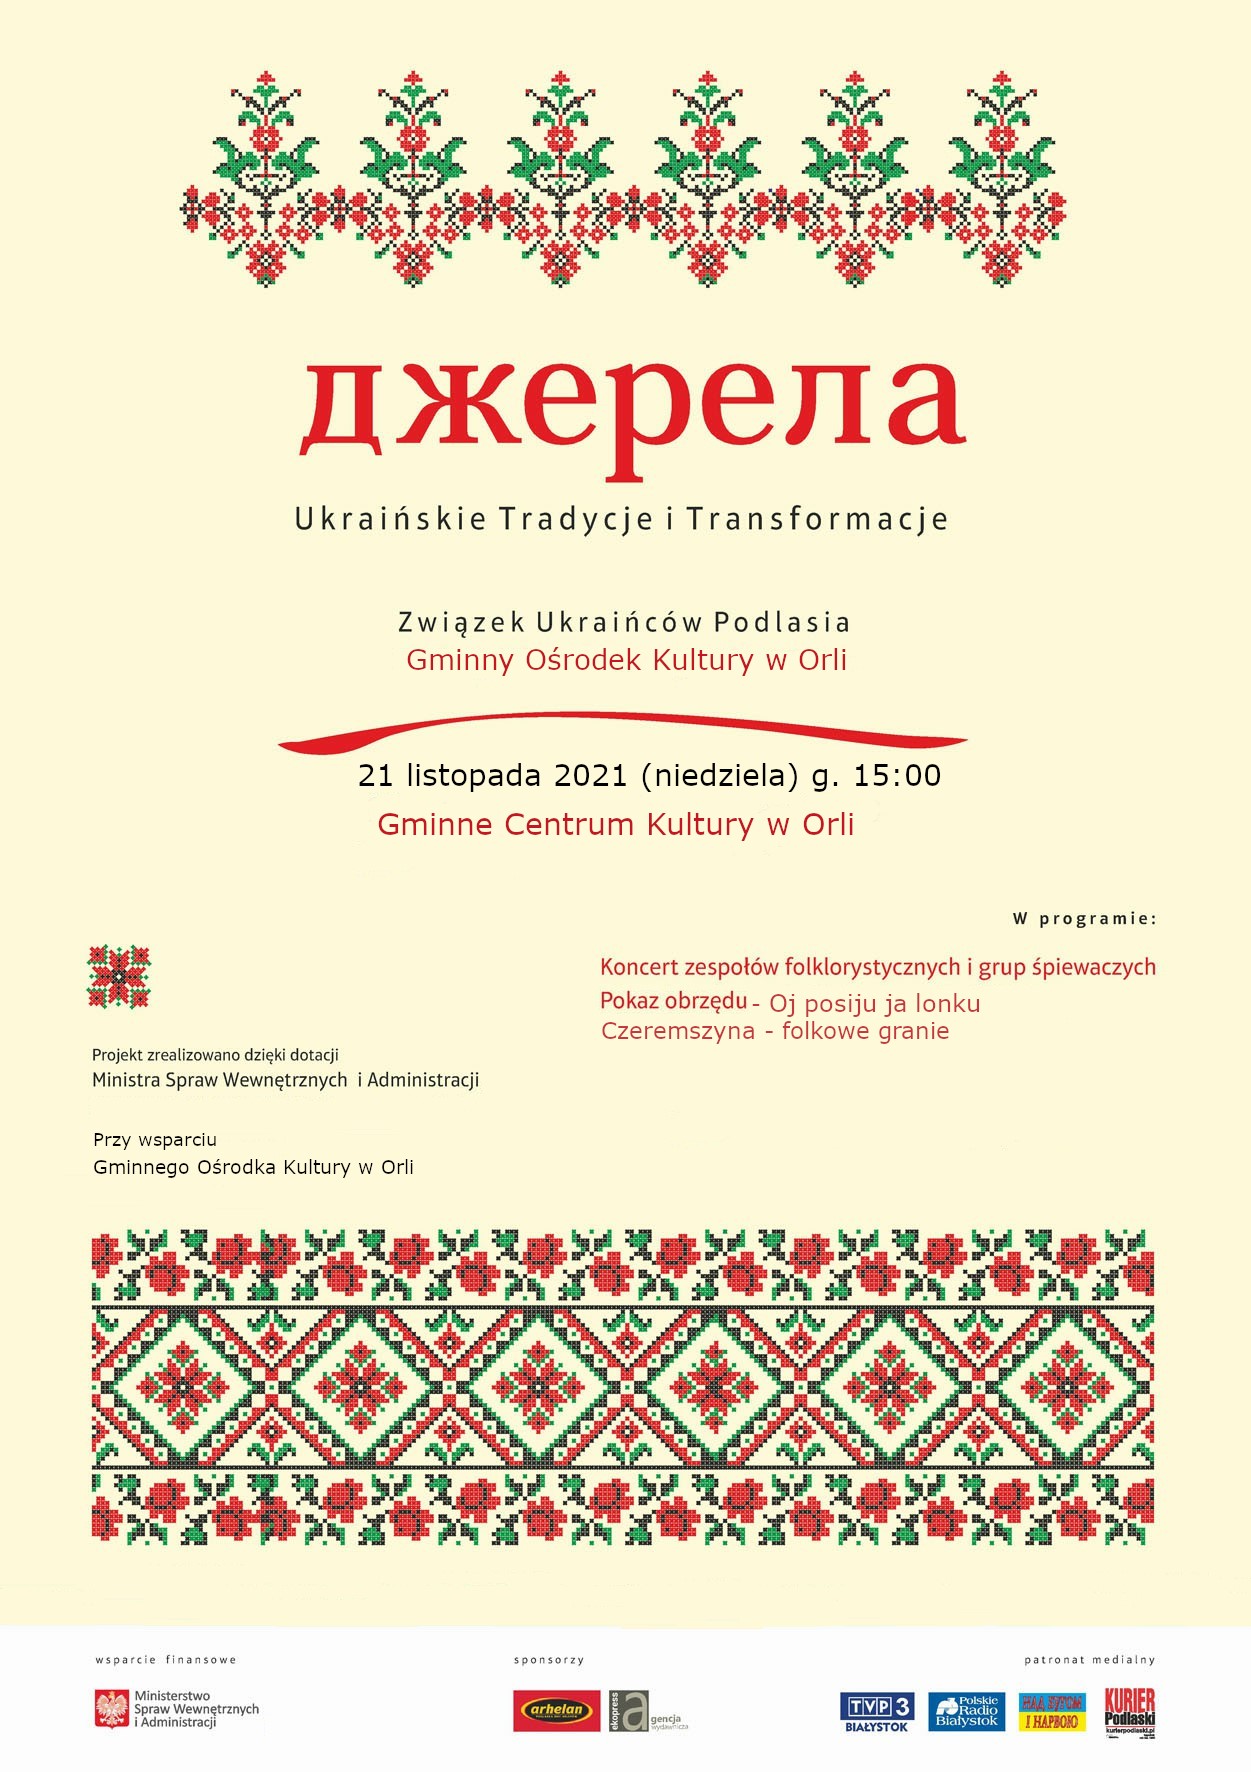 “Джерела – українські традиції та трансформації”